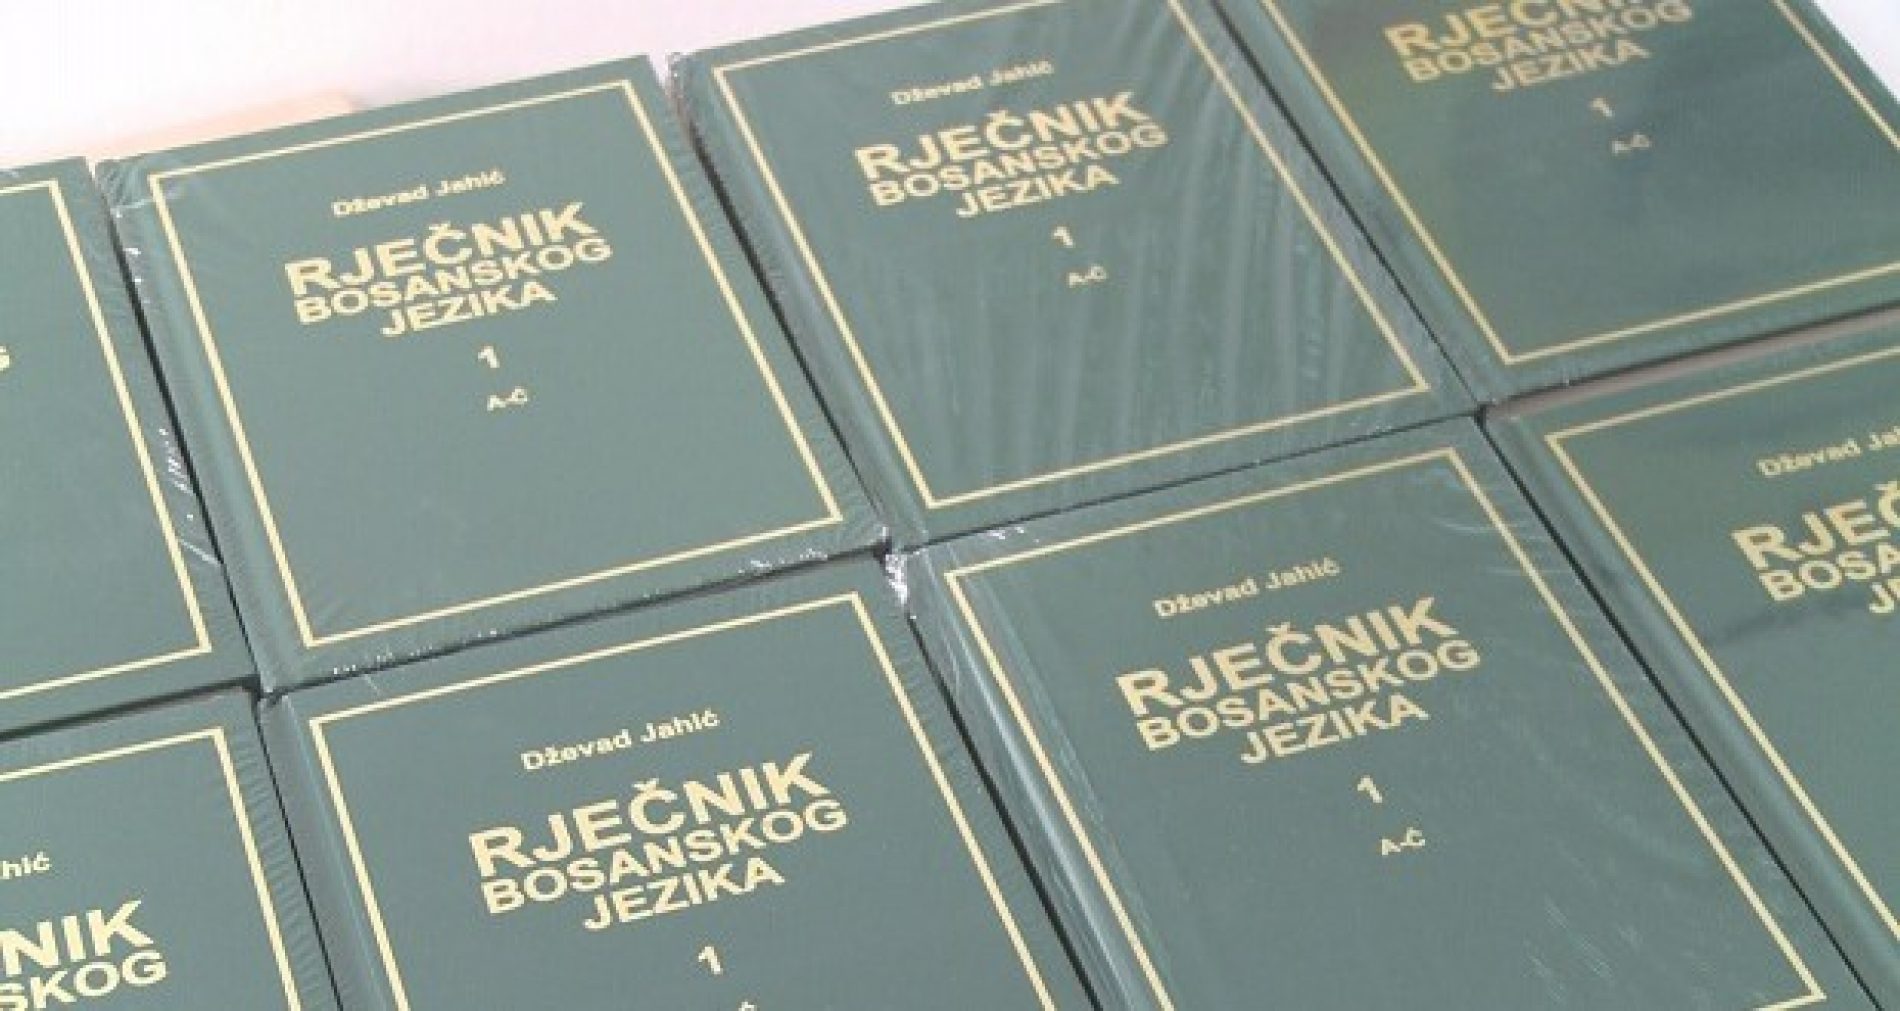 Nastavlja se projekat višetomnog Rječnika bosanskog jezika